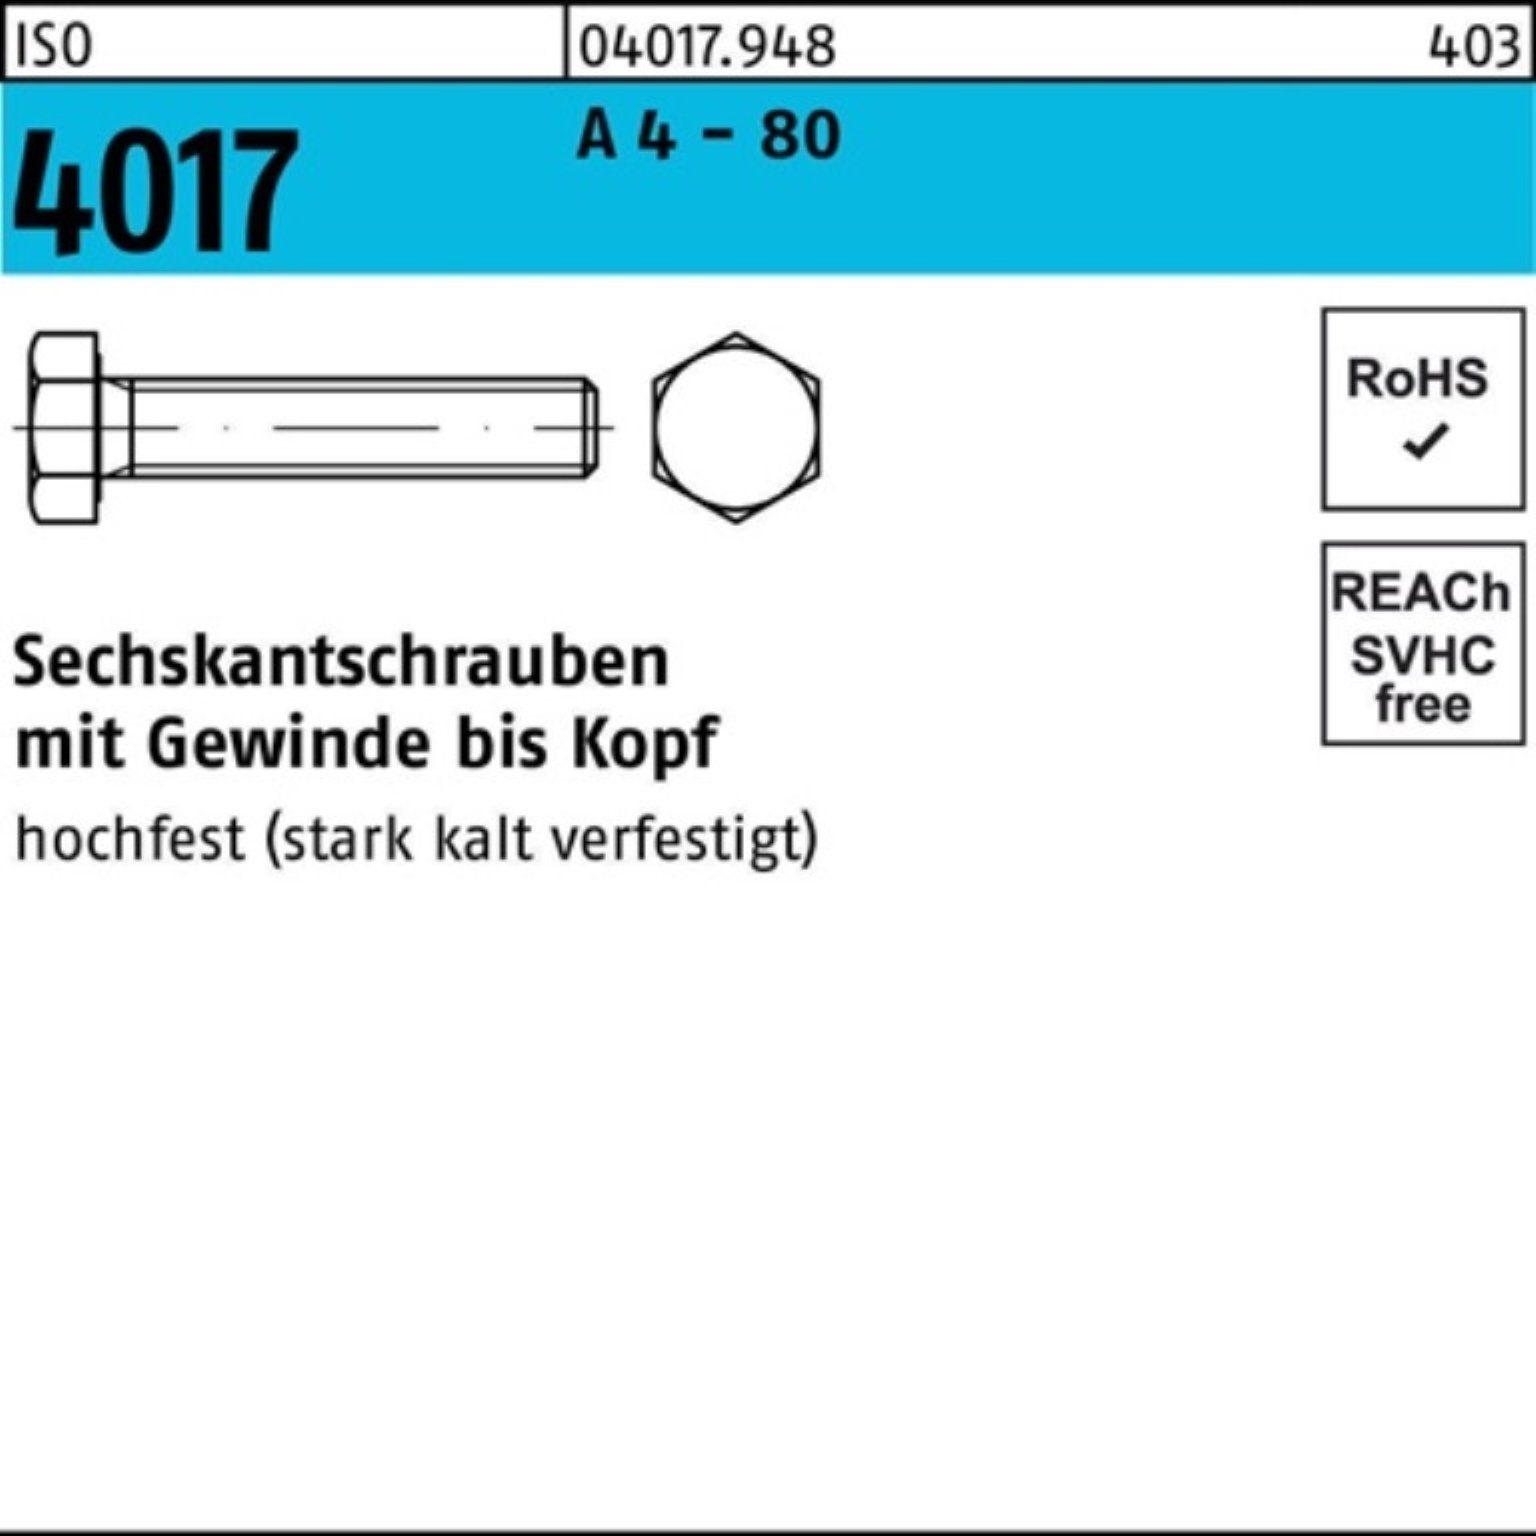 Bufab Sechskantschraube 100er Pack Sechskantschraube ISO 4017 VG M10x 55 A 4 - 80 100 Stück I